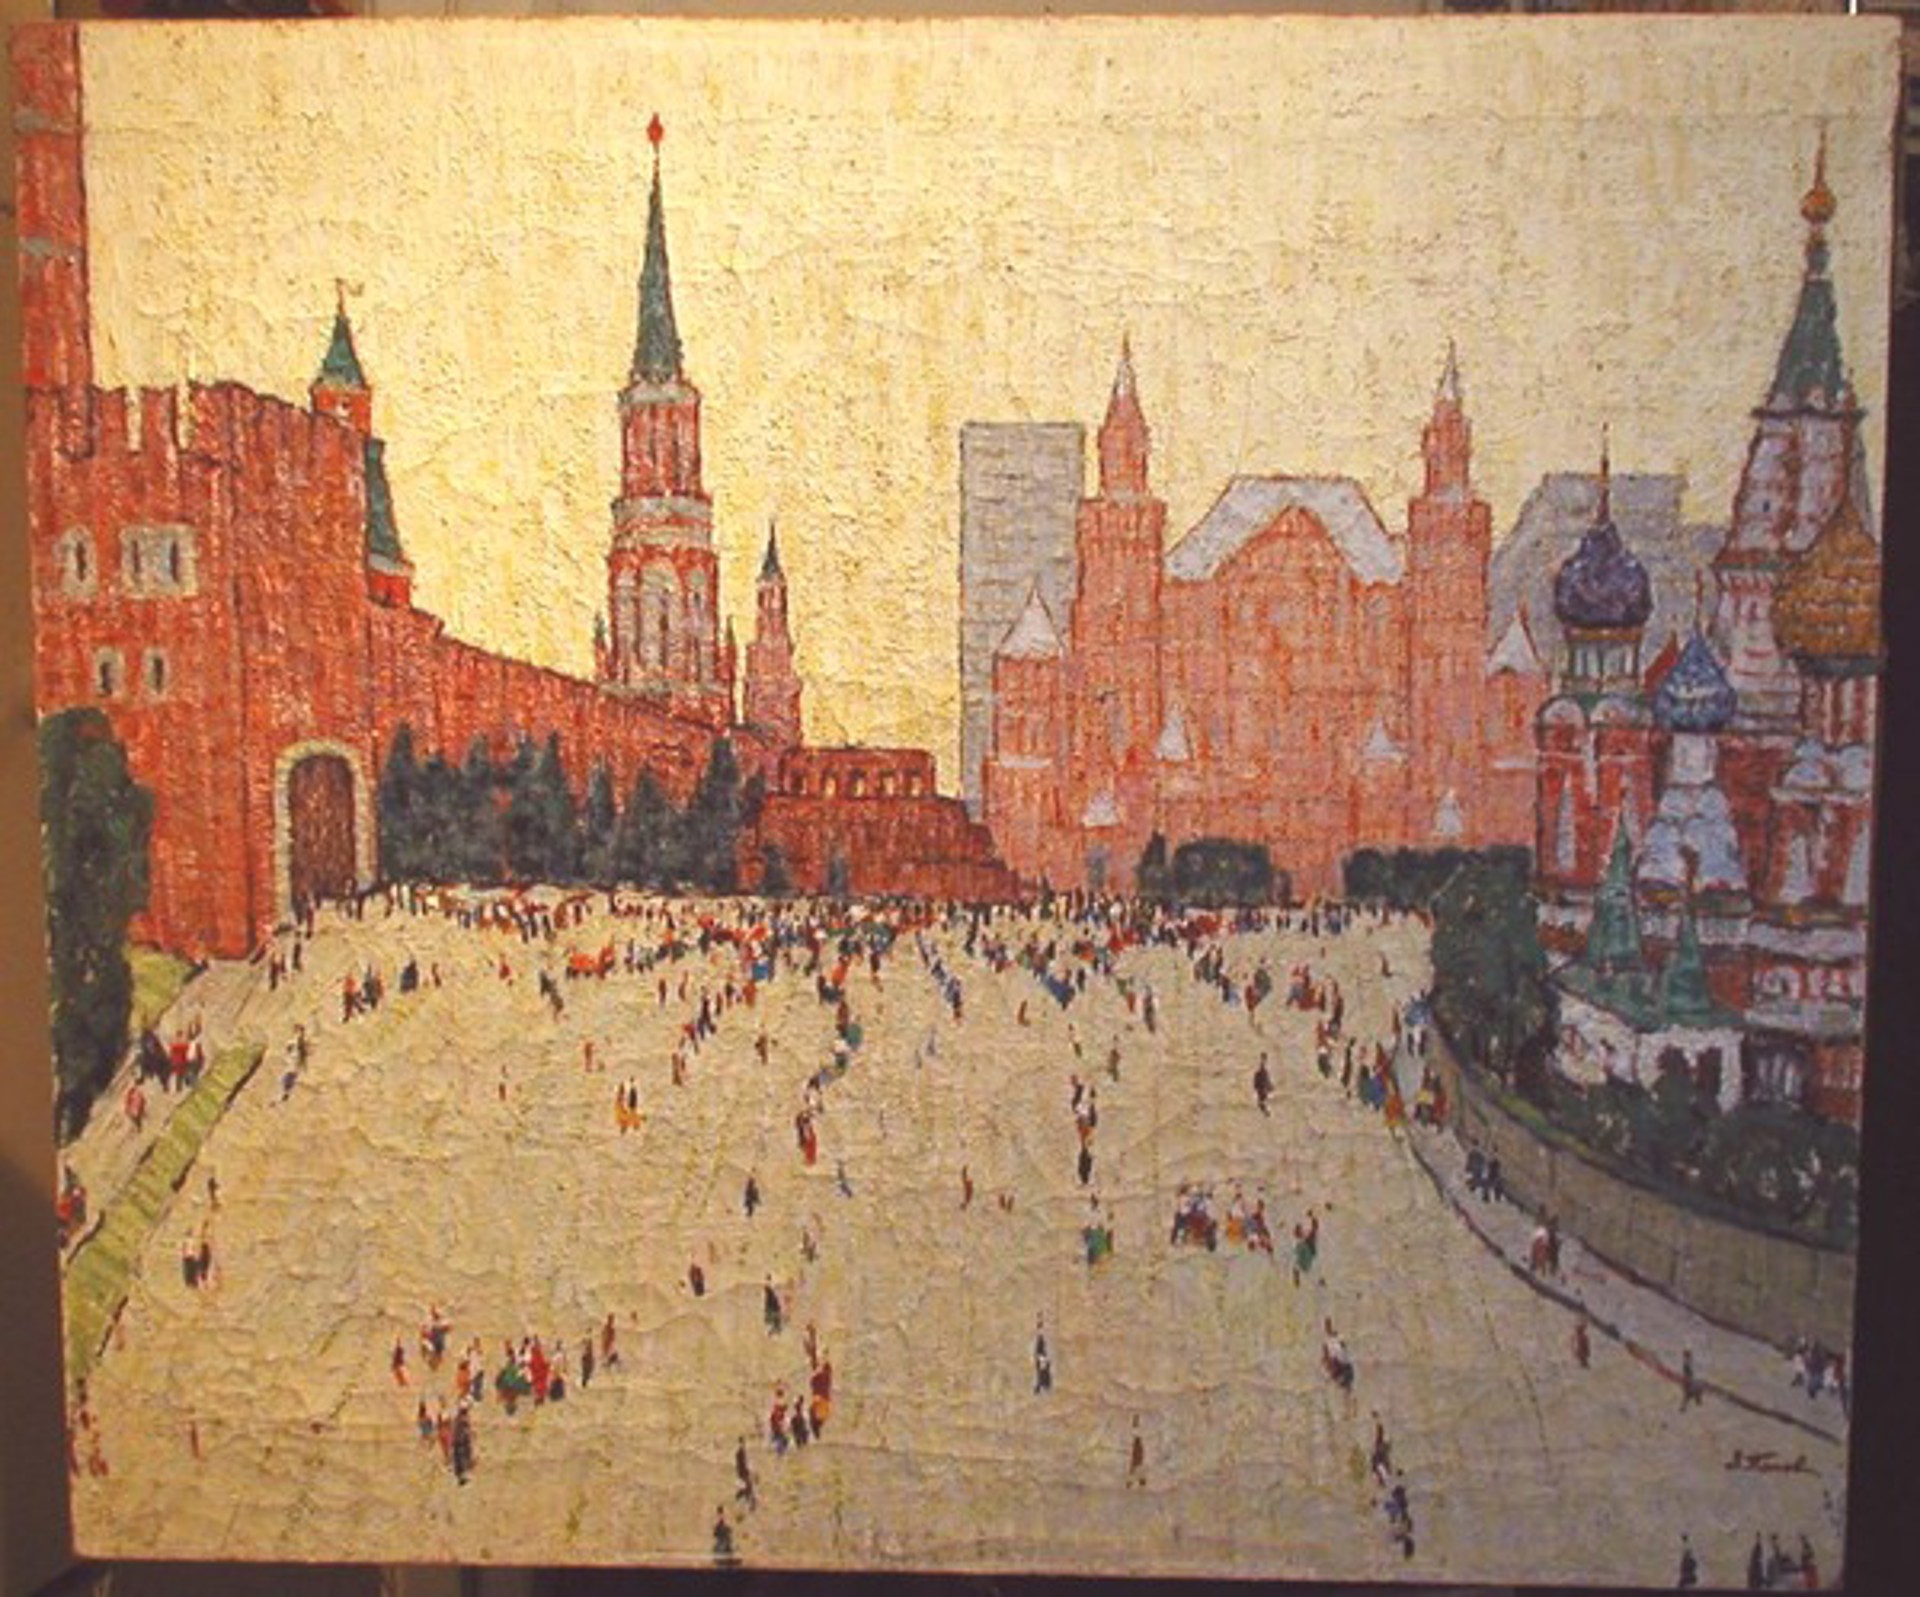 Red Square by Zinnovi Popov